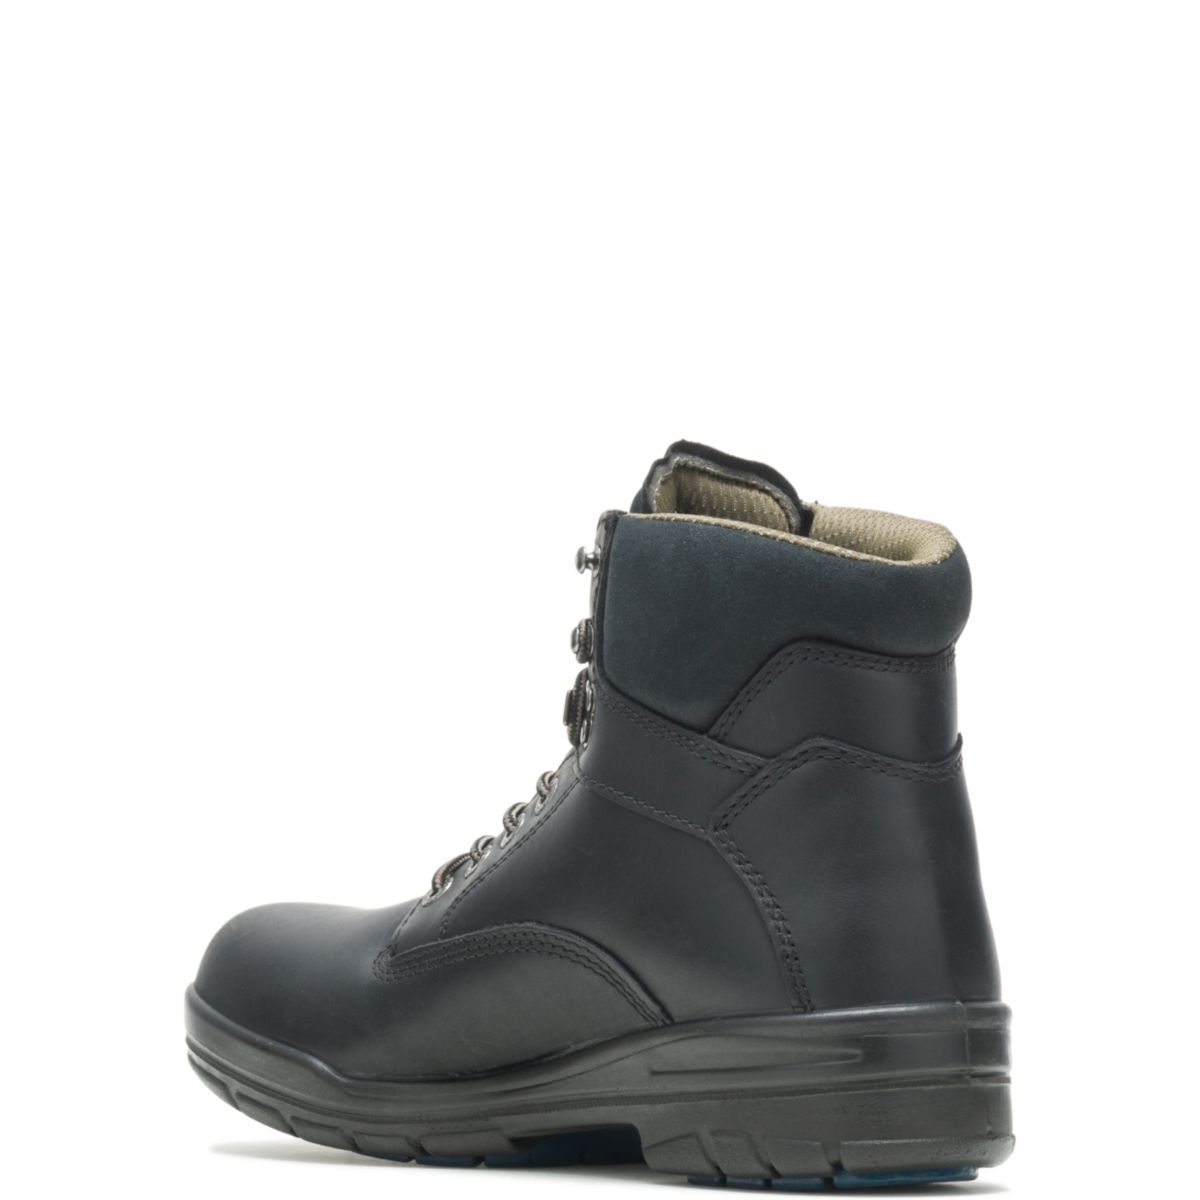 WOLVERINE Men's 6 DuraShocksÂ® Slip Resistant Direct-Attached Lined Soft Toe Work Boot Black - W03123 14 WIDE BLACK - BLACK, 11.5